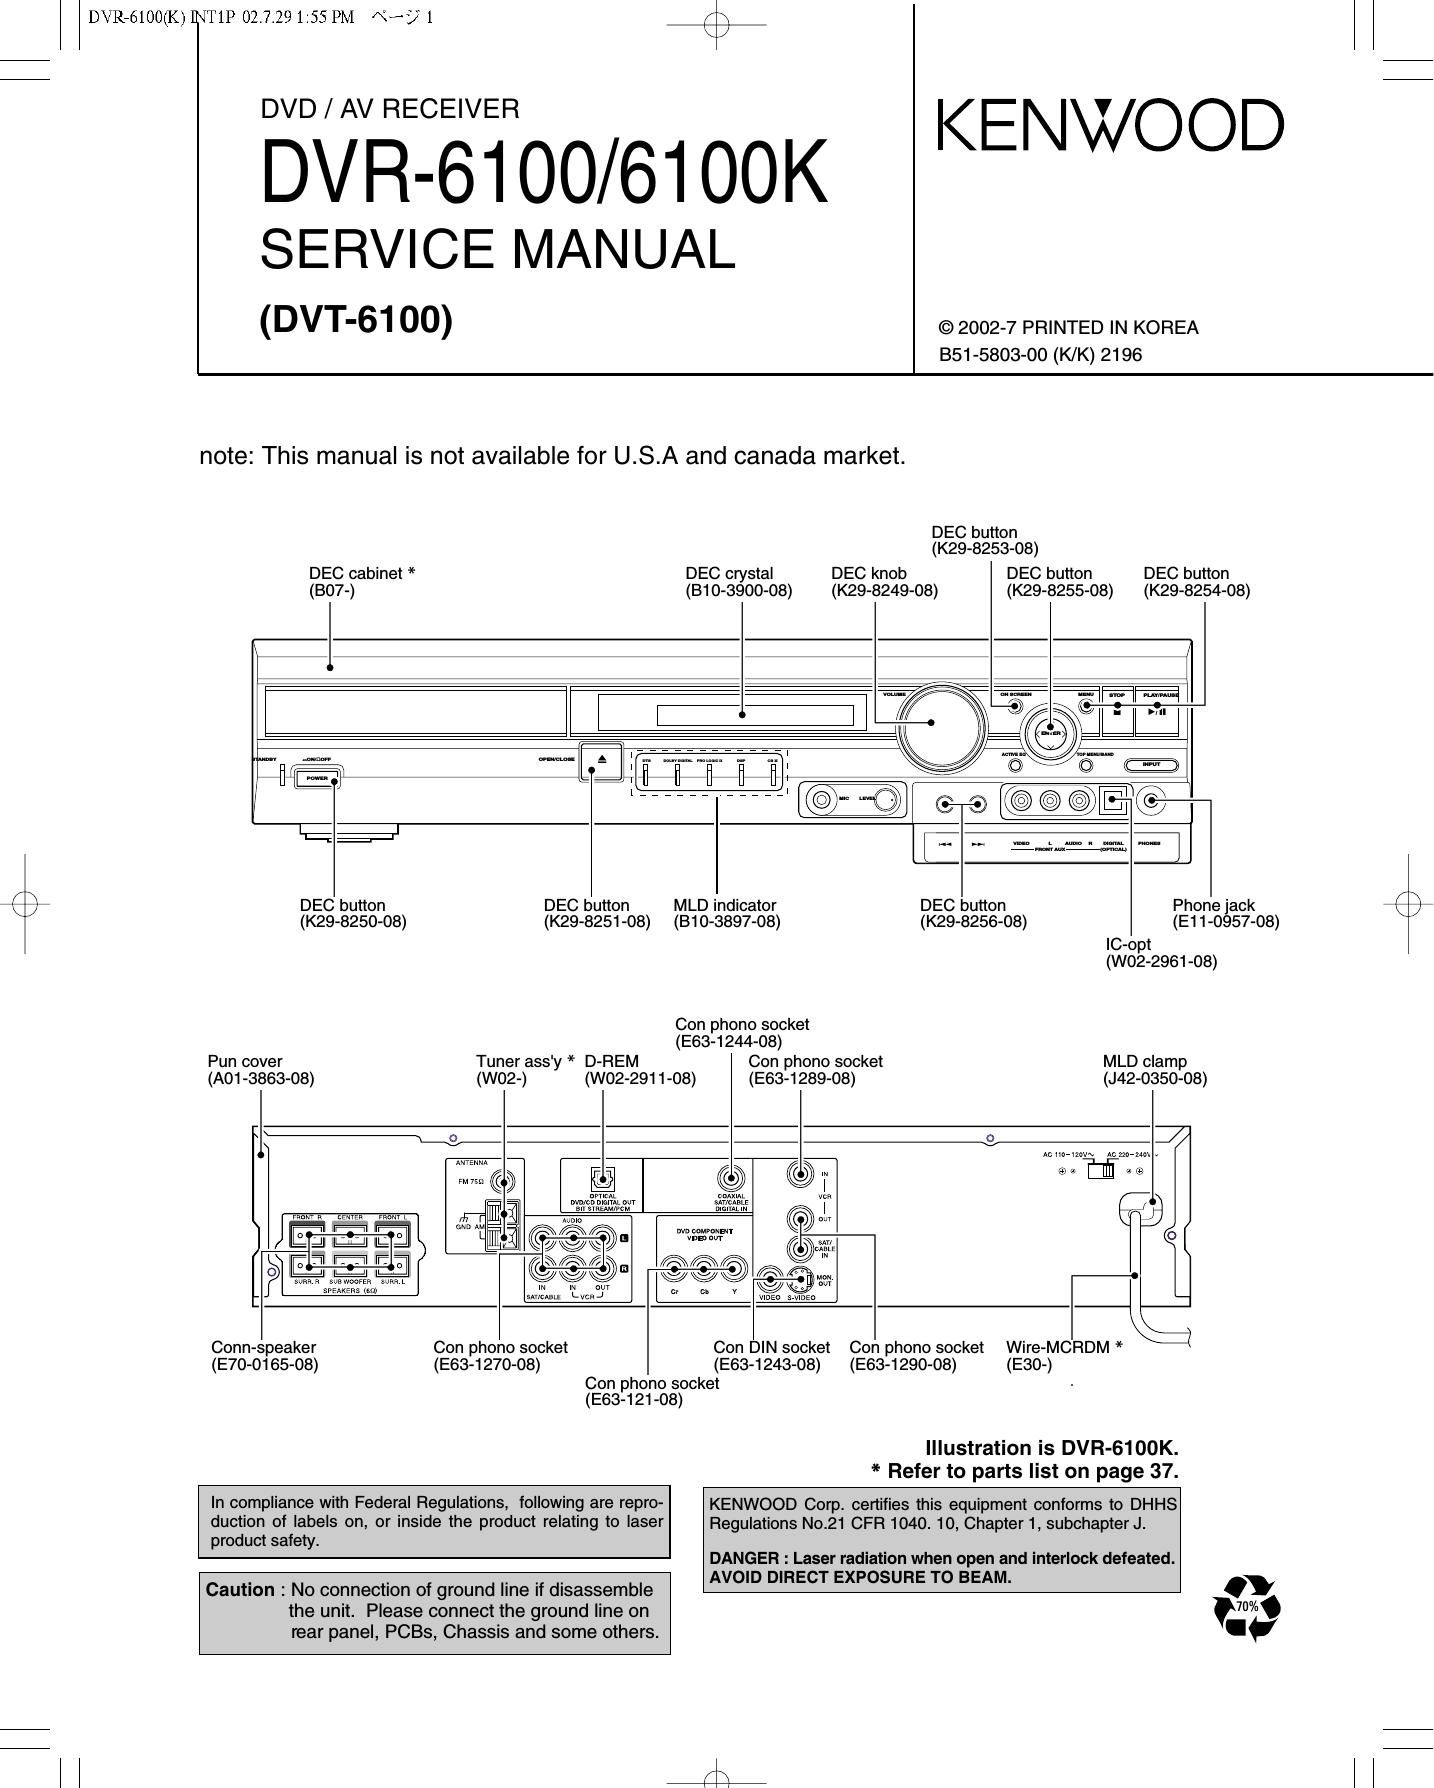 Kenwood DVR 6100 K Service Manual